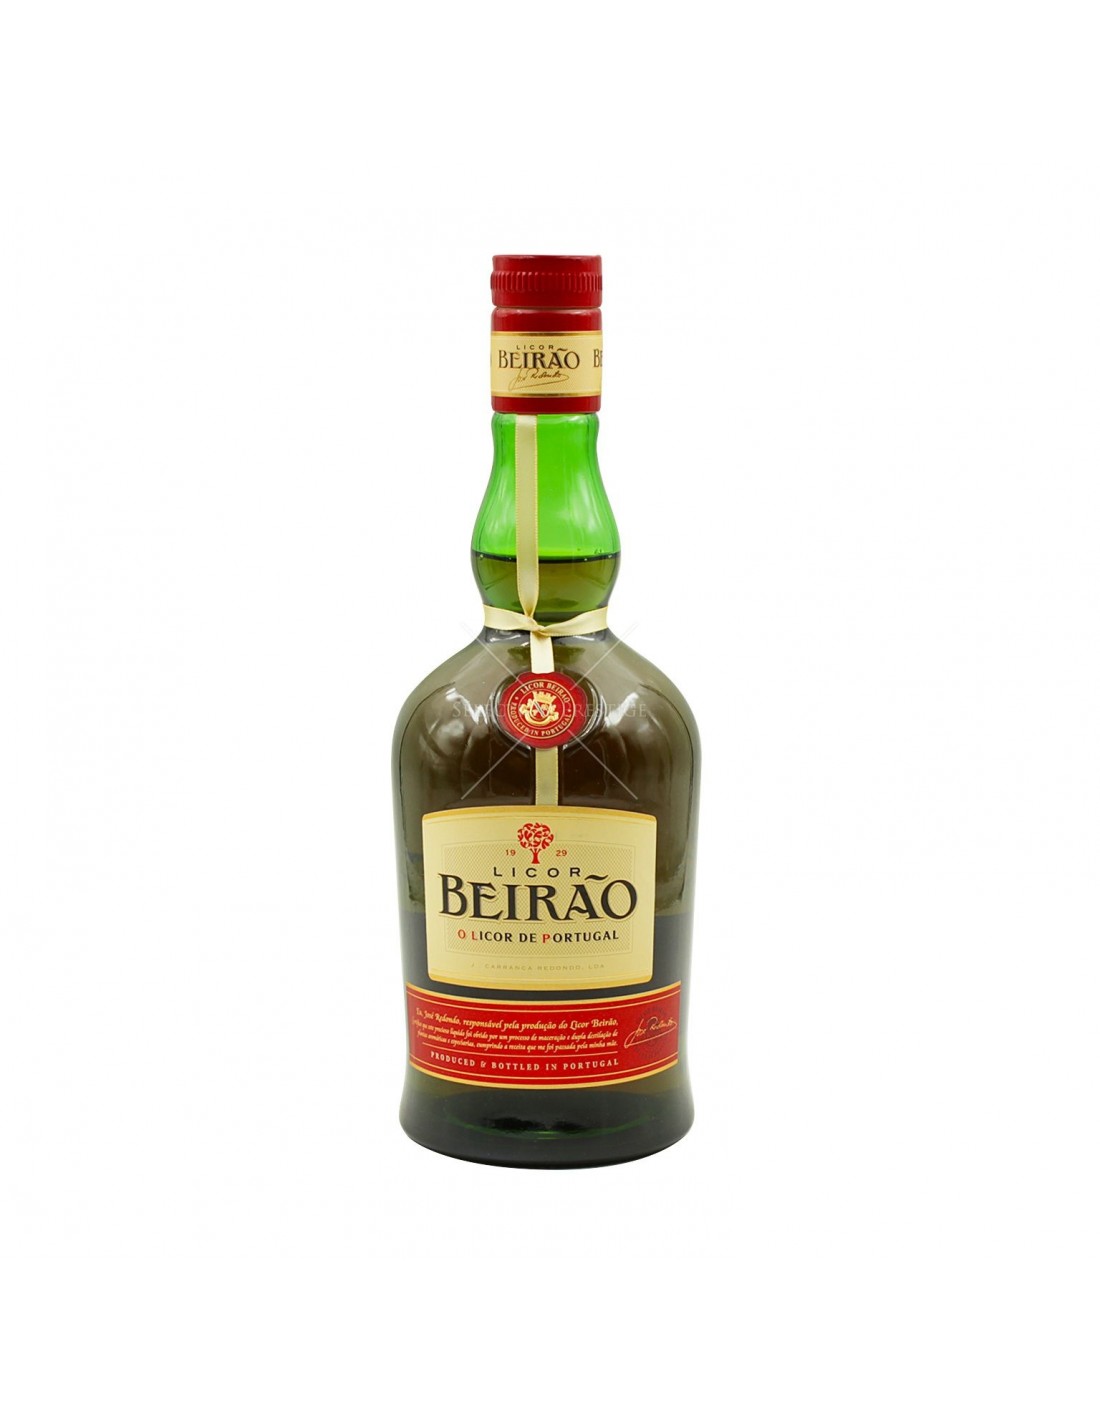 Lichior Beirao, 22% alc., 0.7L, Portugalia alcooldiscount.ro